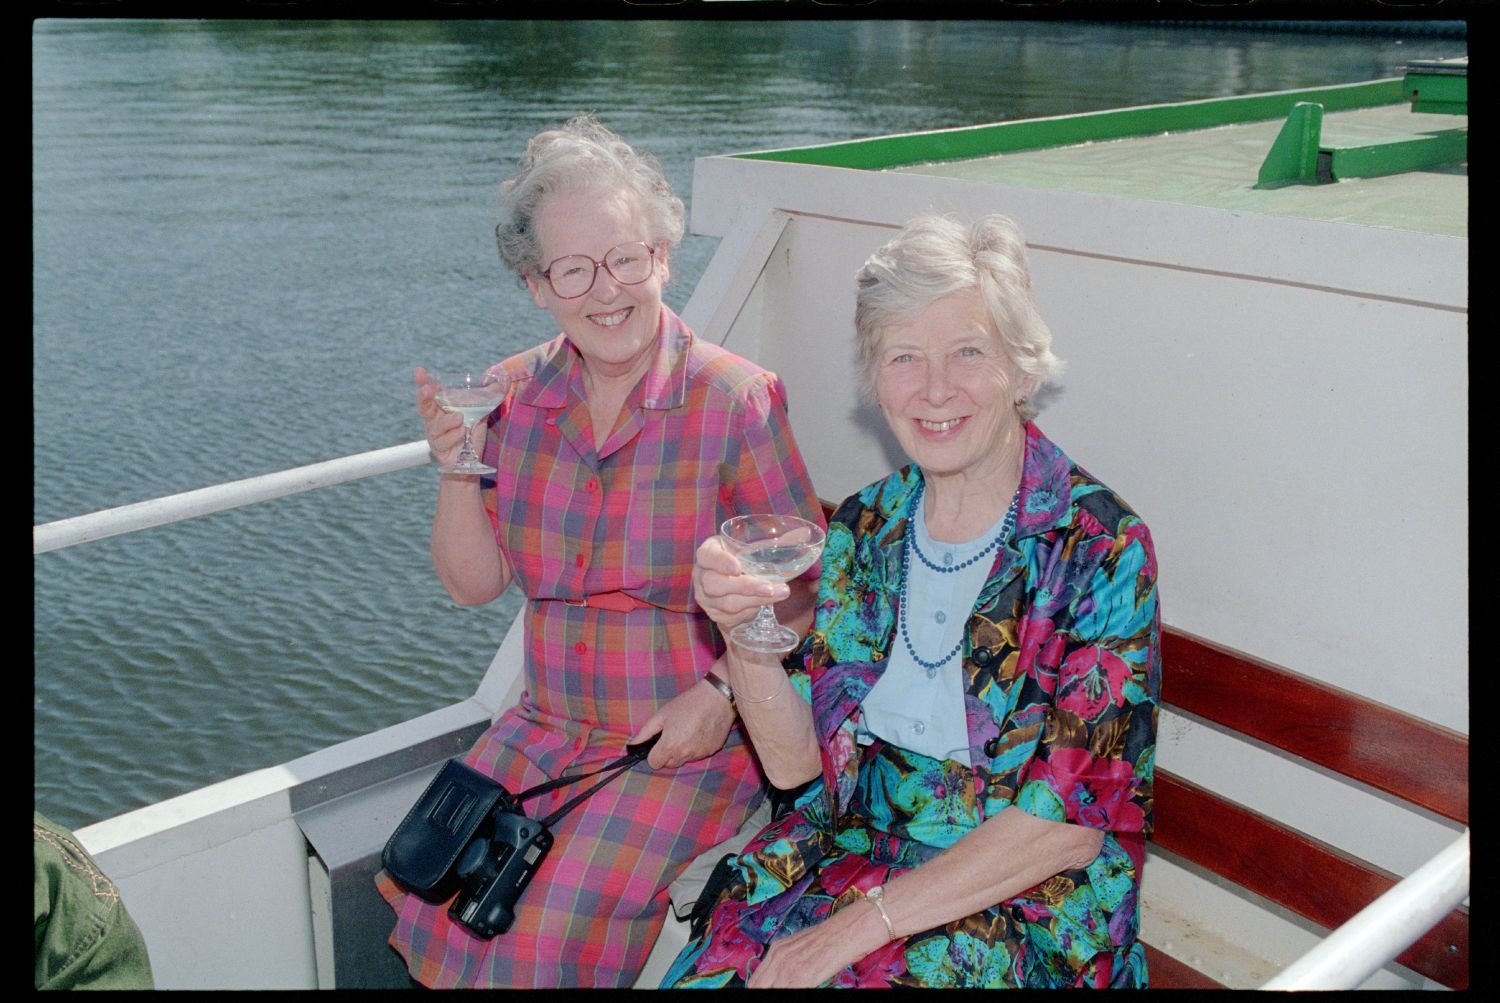 Fotografie: "Allied Wives Meeting", Ausflug mit dem Schiff für Ehefrauen der britischen, französischen und US-Community in Berlin-Wannsee (AlliiertenMuseum/U.S. Army Photograph Public Domain Mark)